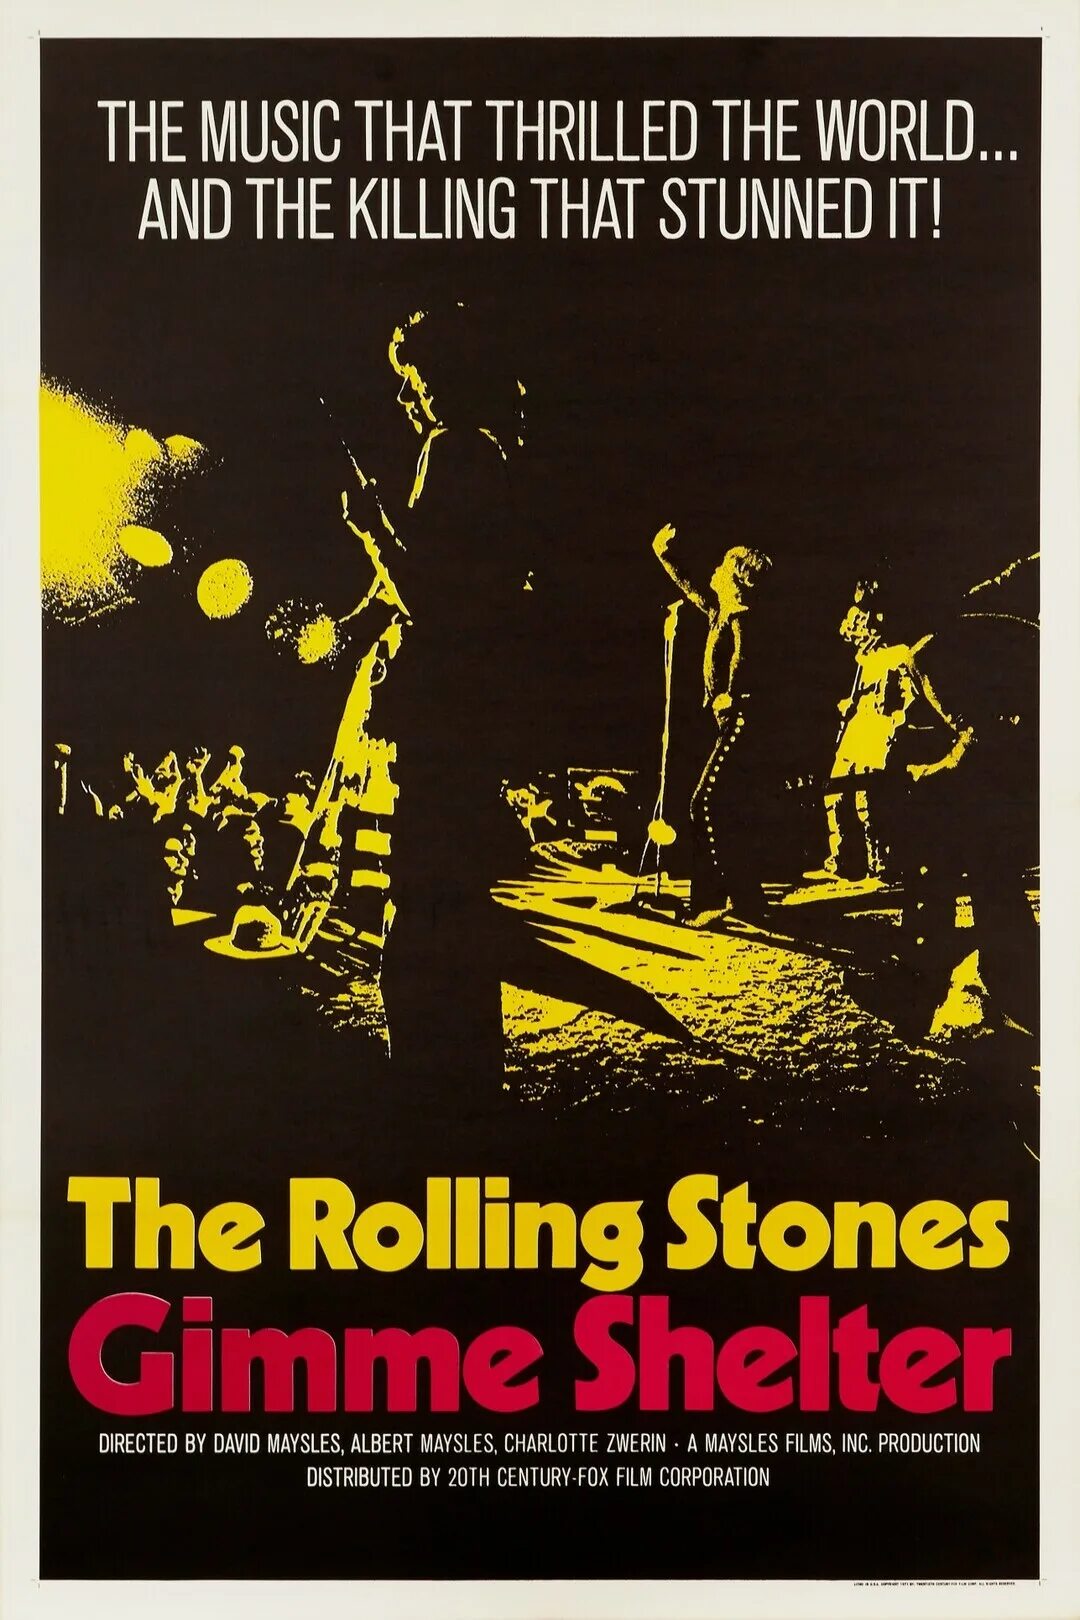 Stones gimme shelter. Gimme Shelter 1970. Gimme Shelter movie. Rolling Stones "Gimme Shelter". The Rolling Stones Gimme Shelter 1970.